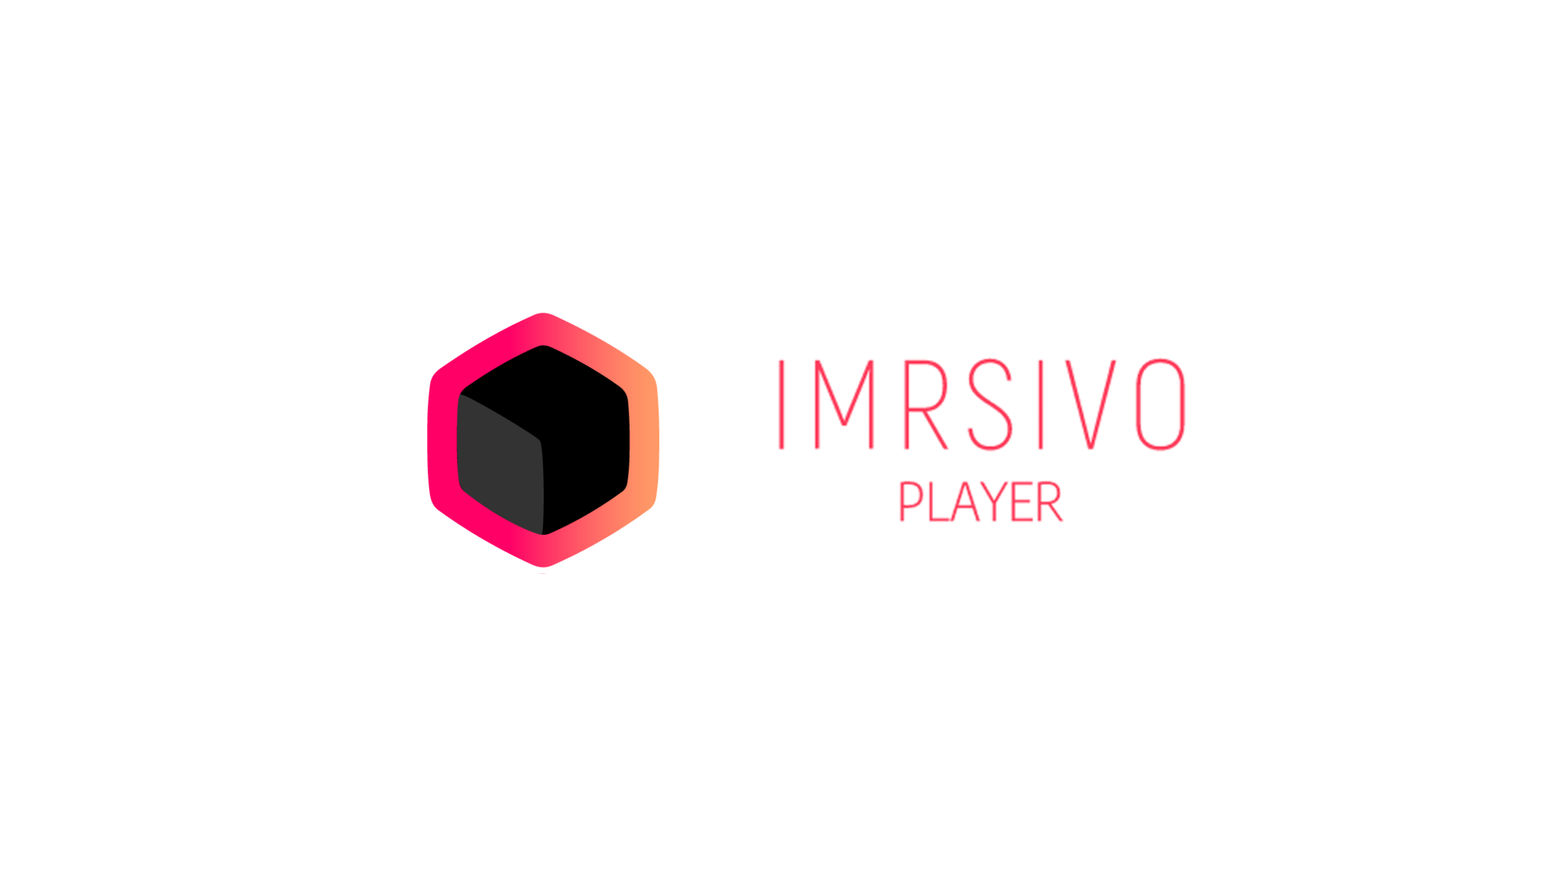 Imrsivo Player